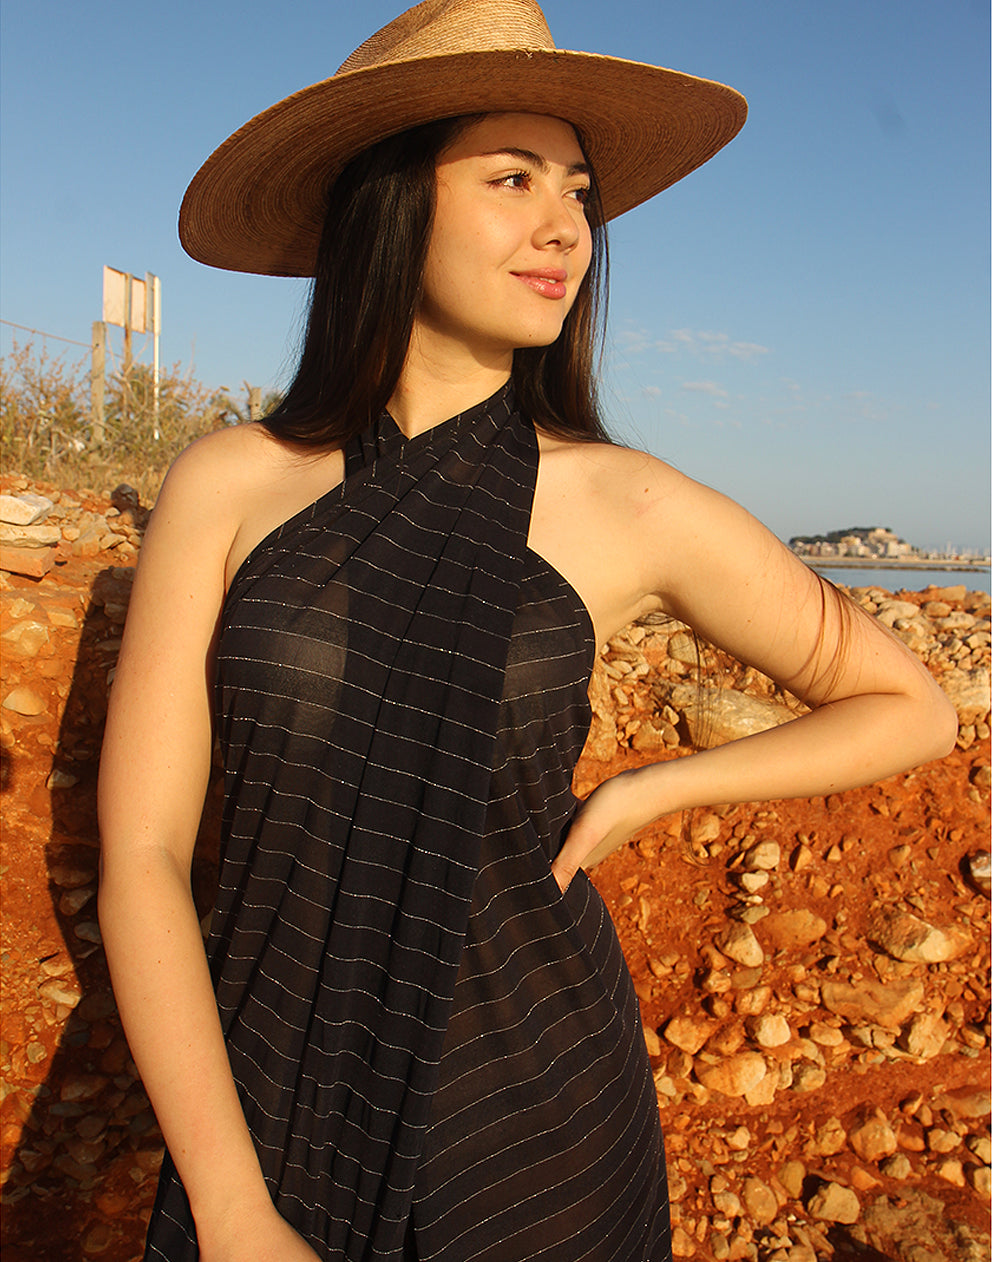 Black Sarong Dress